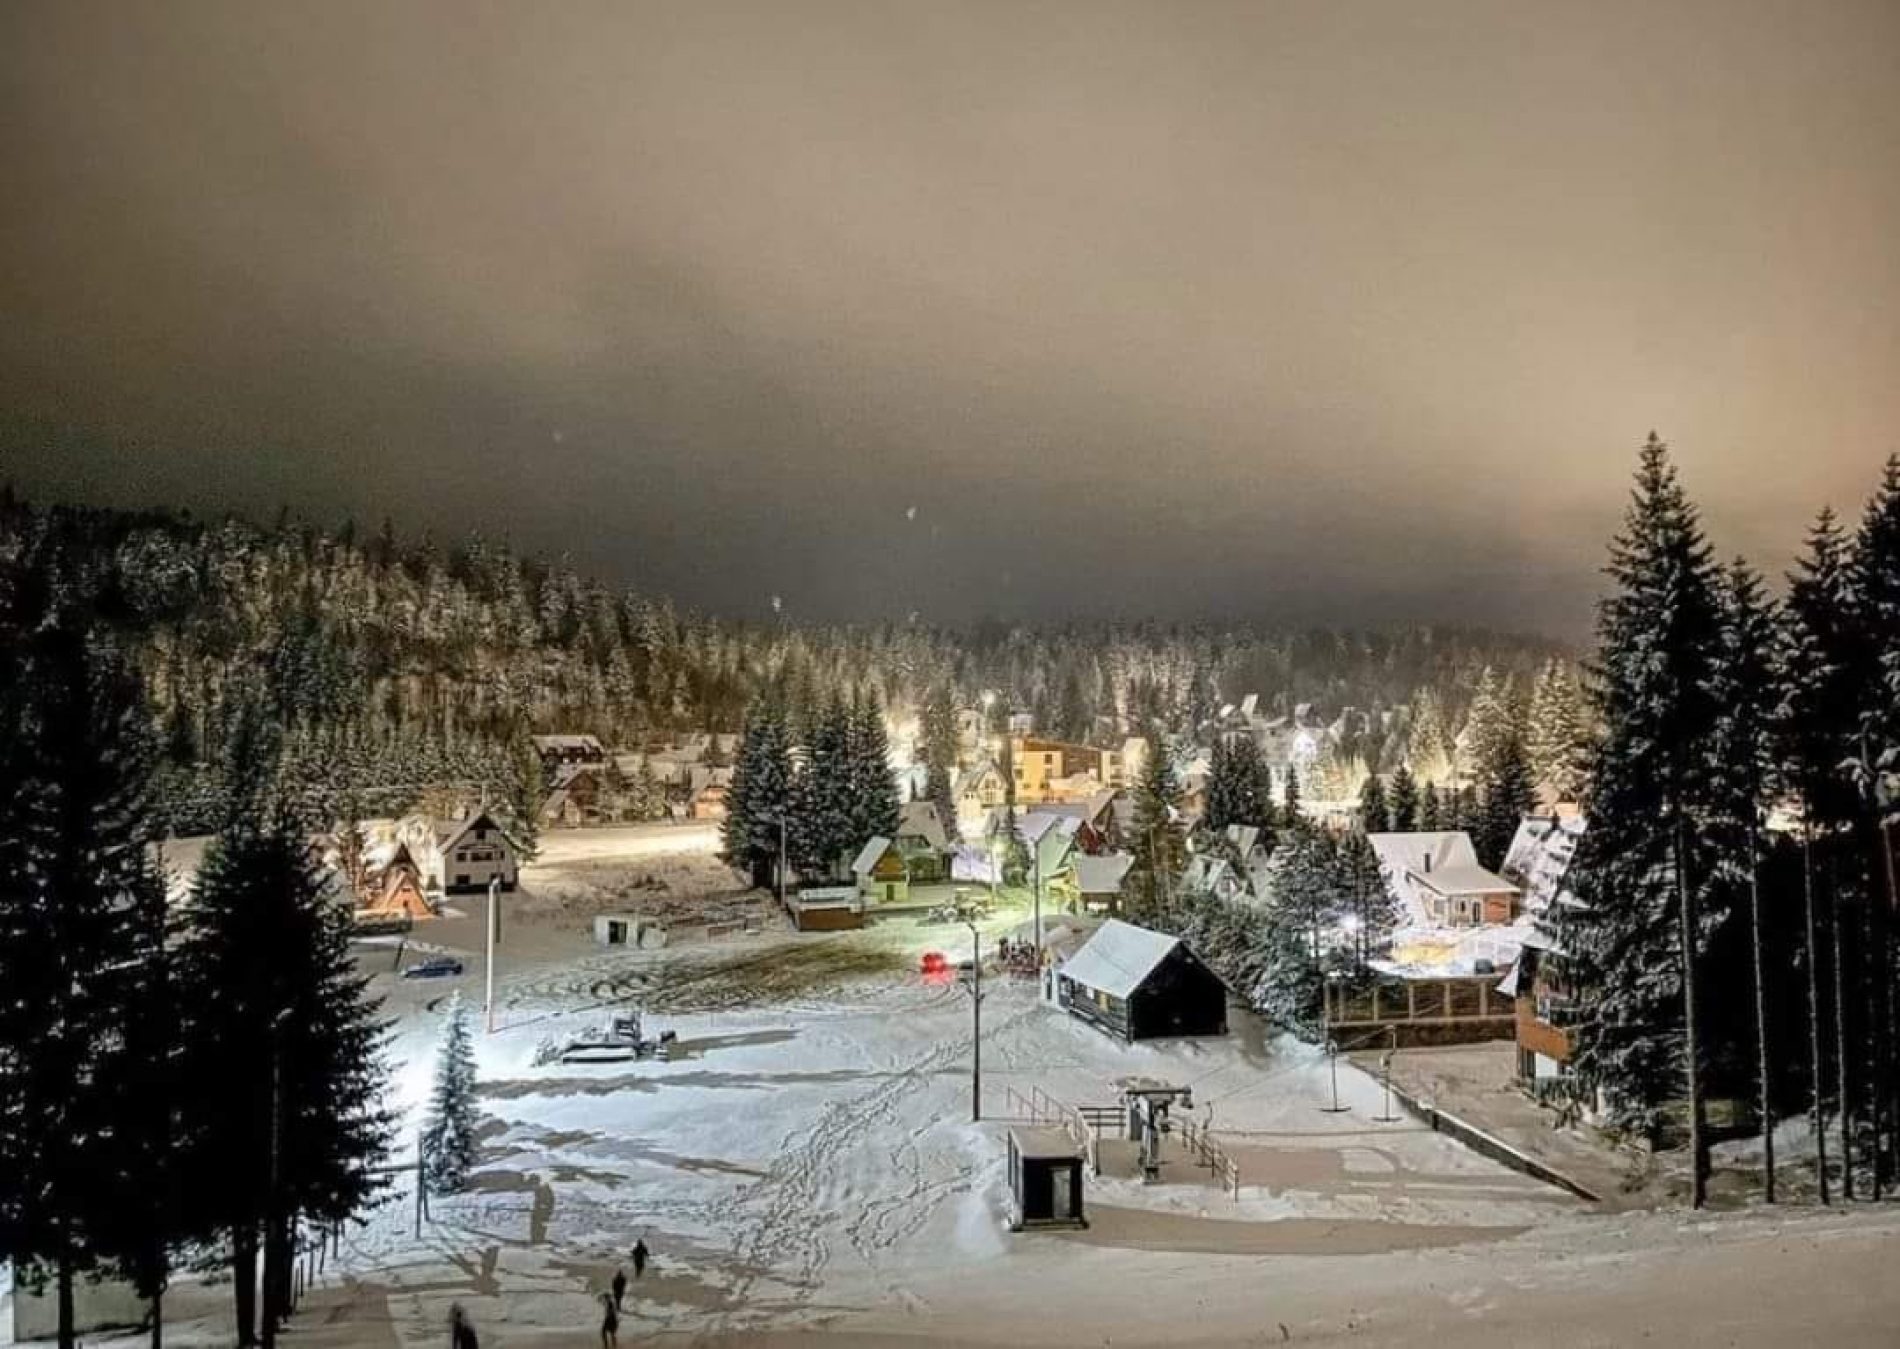 Ski centar ‘Ponijeri’ spreman za novu skijašku sezonu